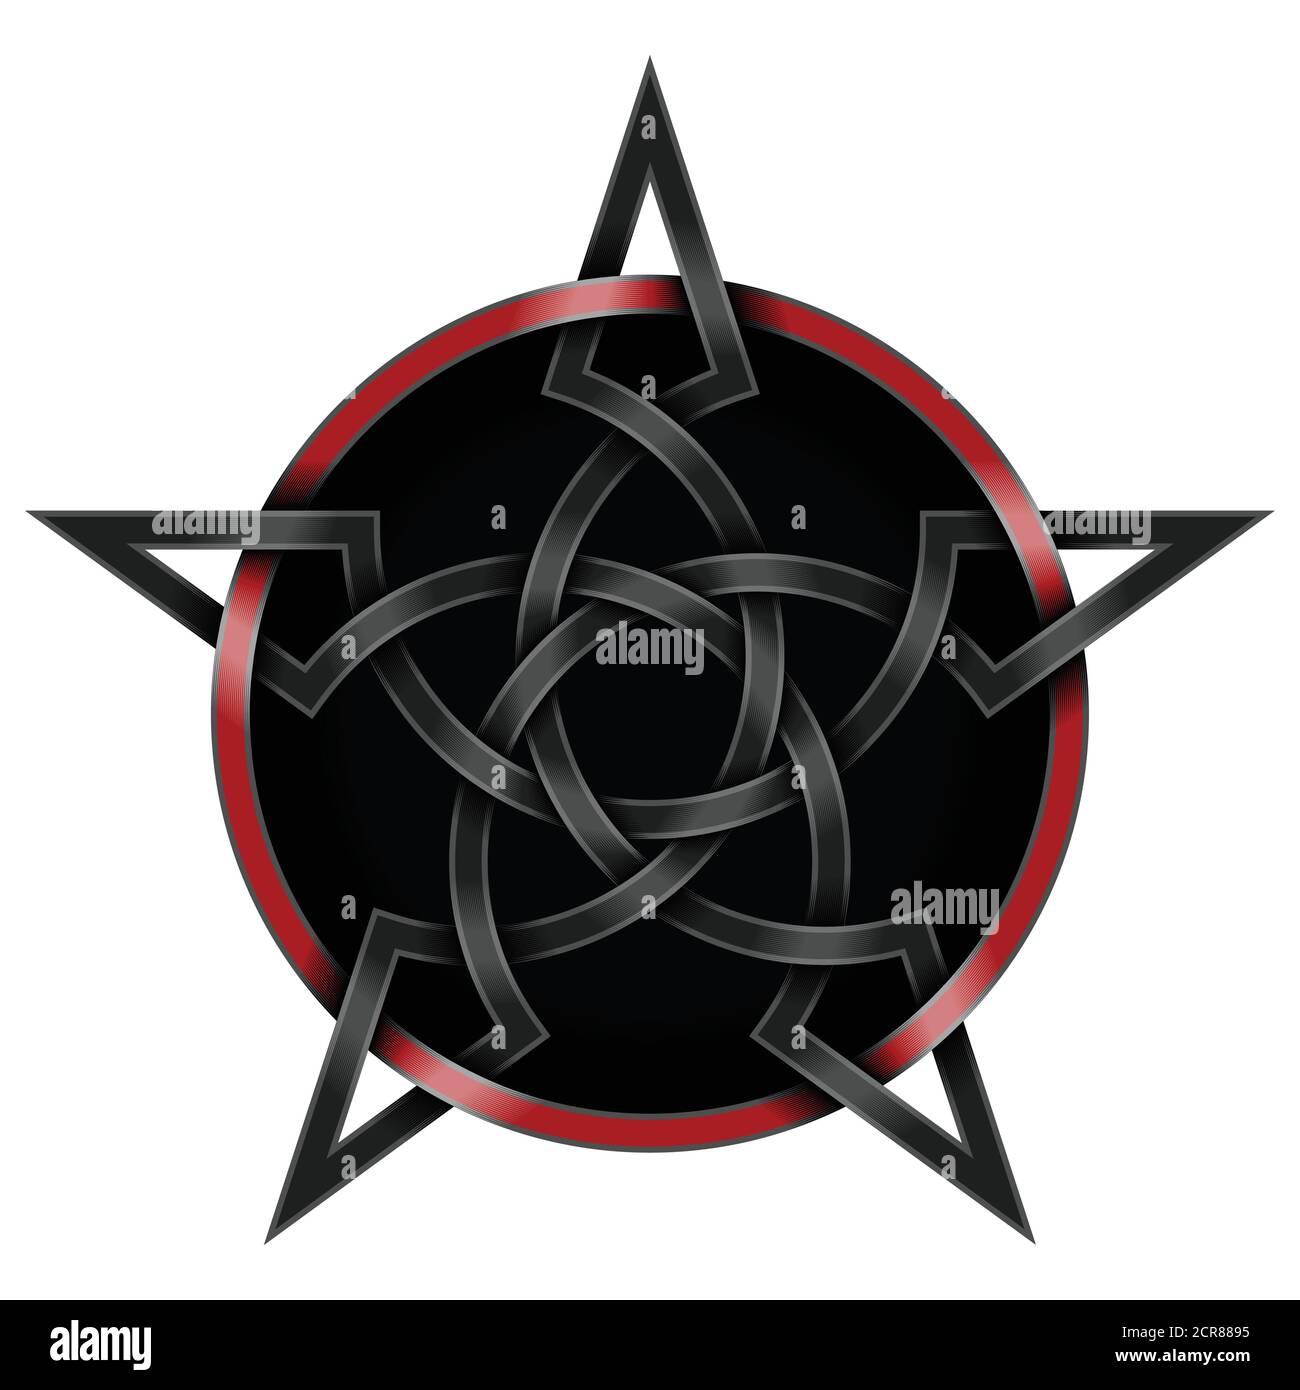 Vektor-Illustration von verflochtenen Stern im keltischen Stil mit Kreis umgeben, mit schwarzem Hintergrund Stock Vektor